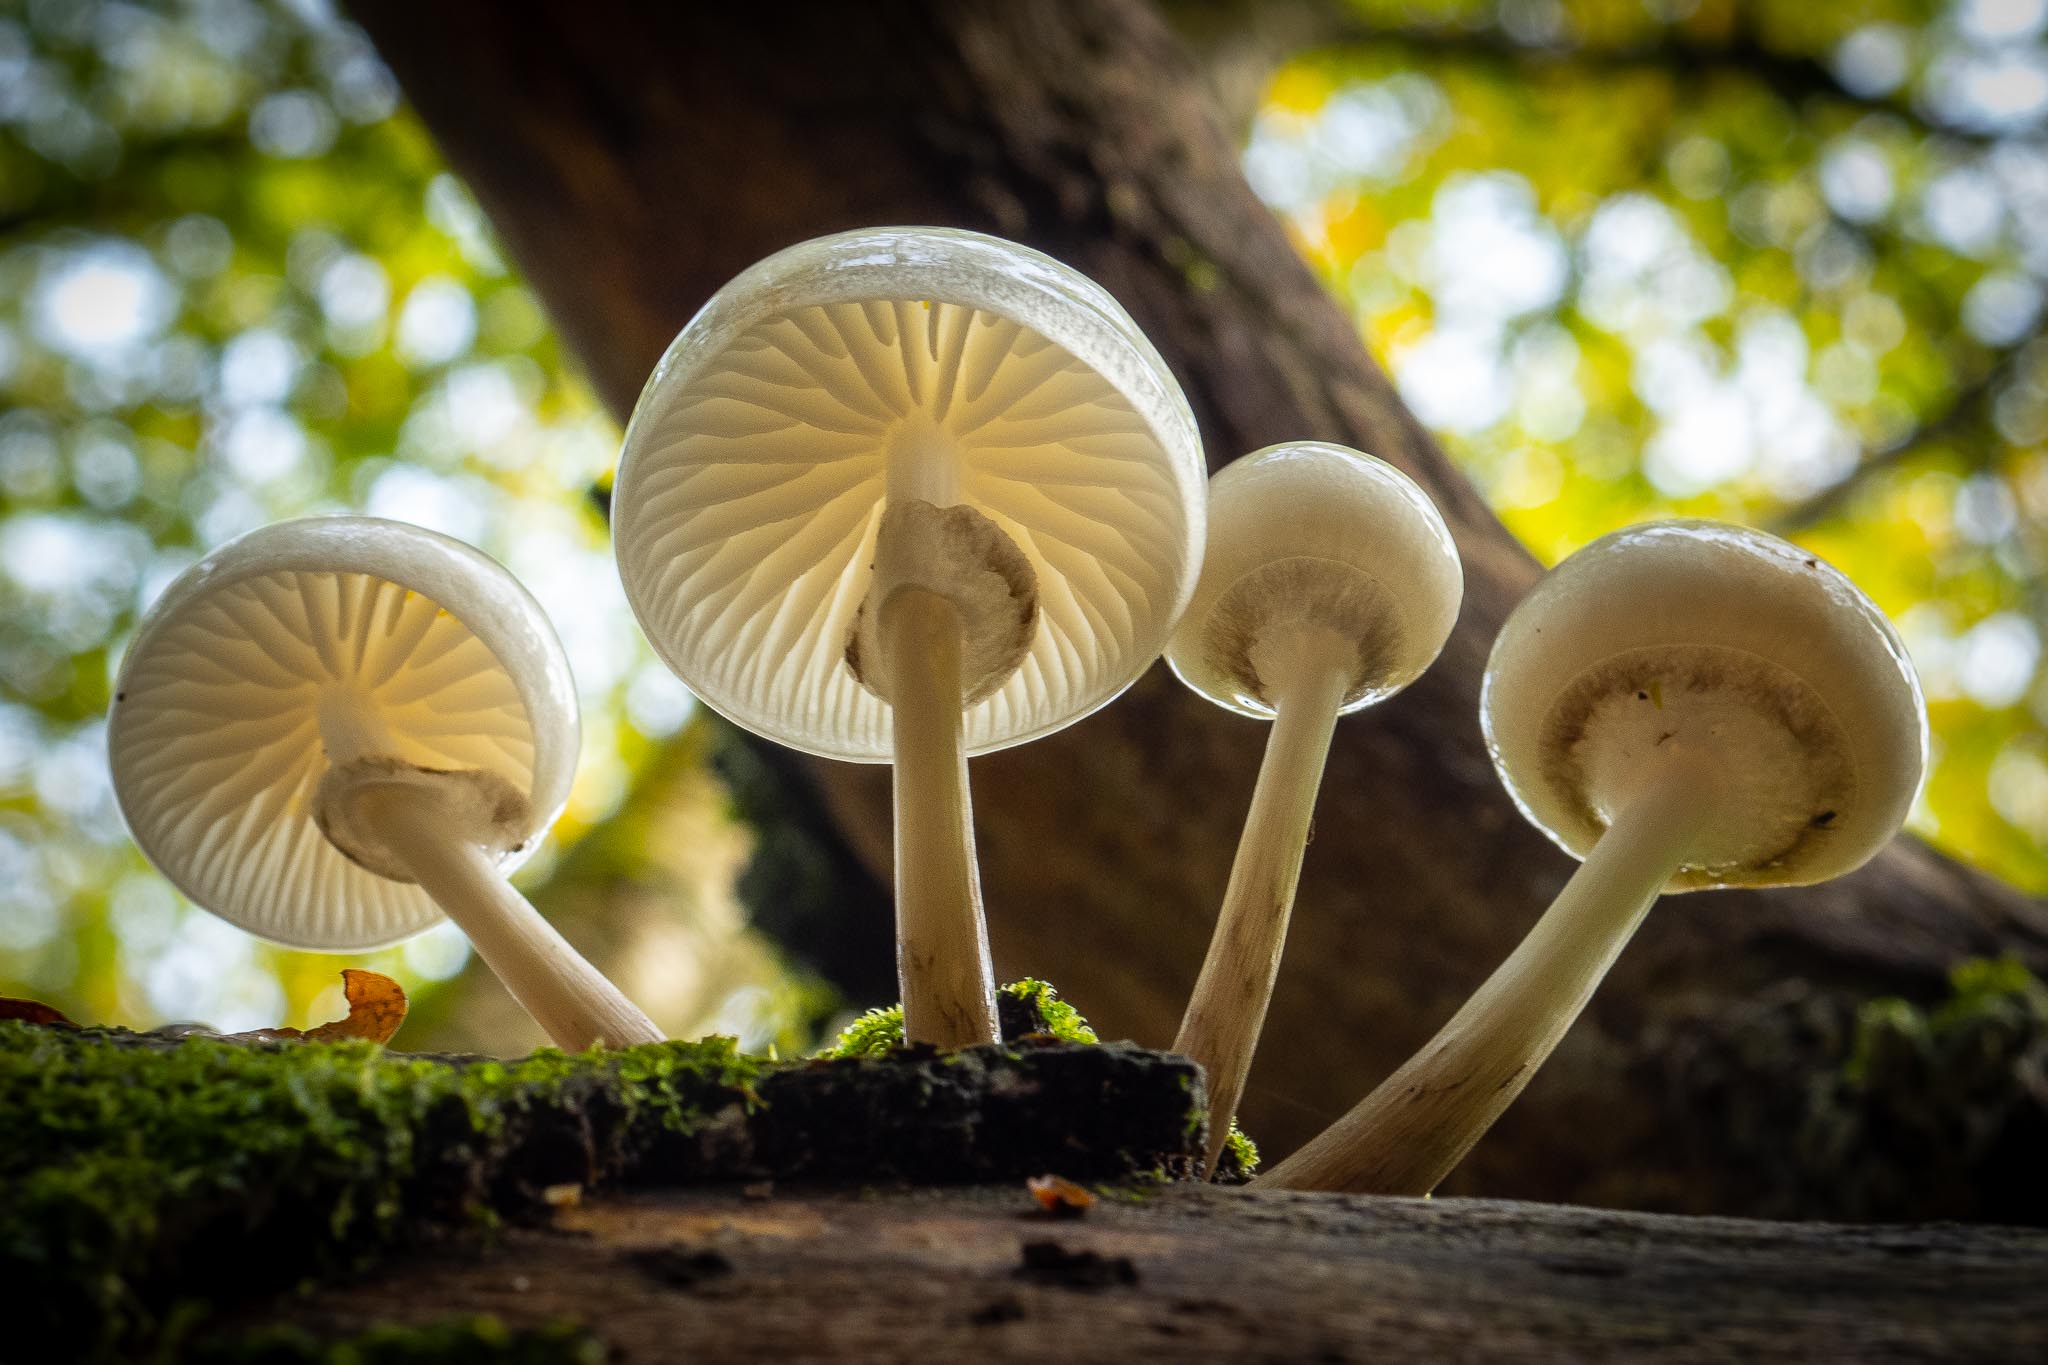 говорящие грибы словарный запас грибов